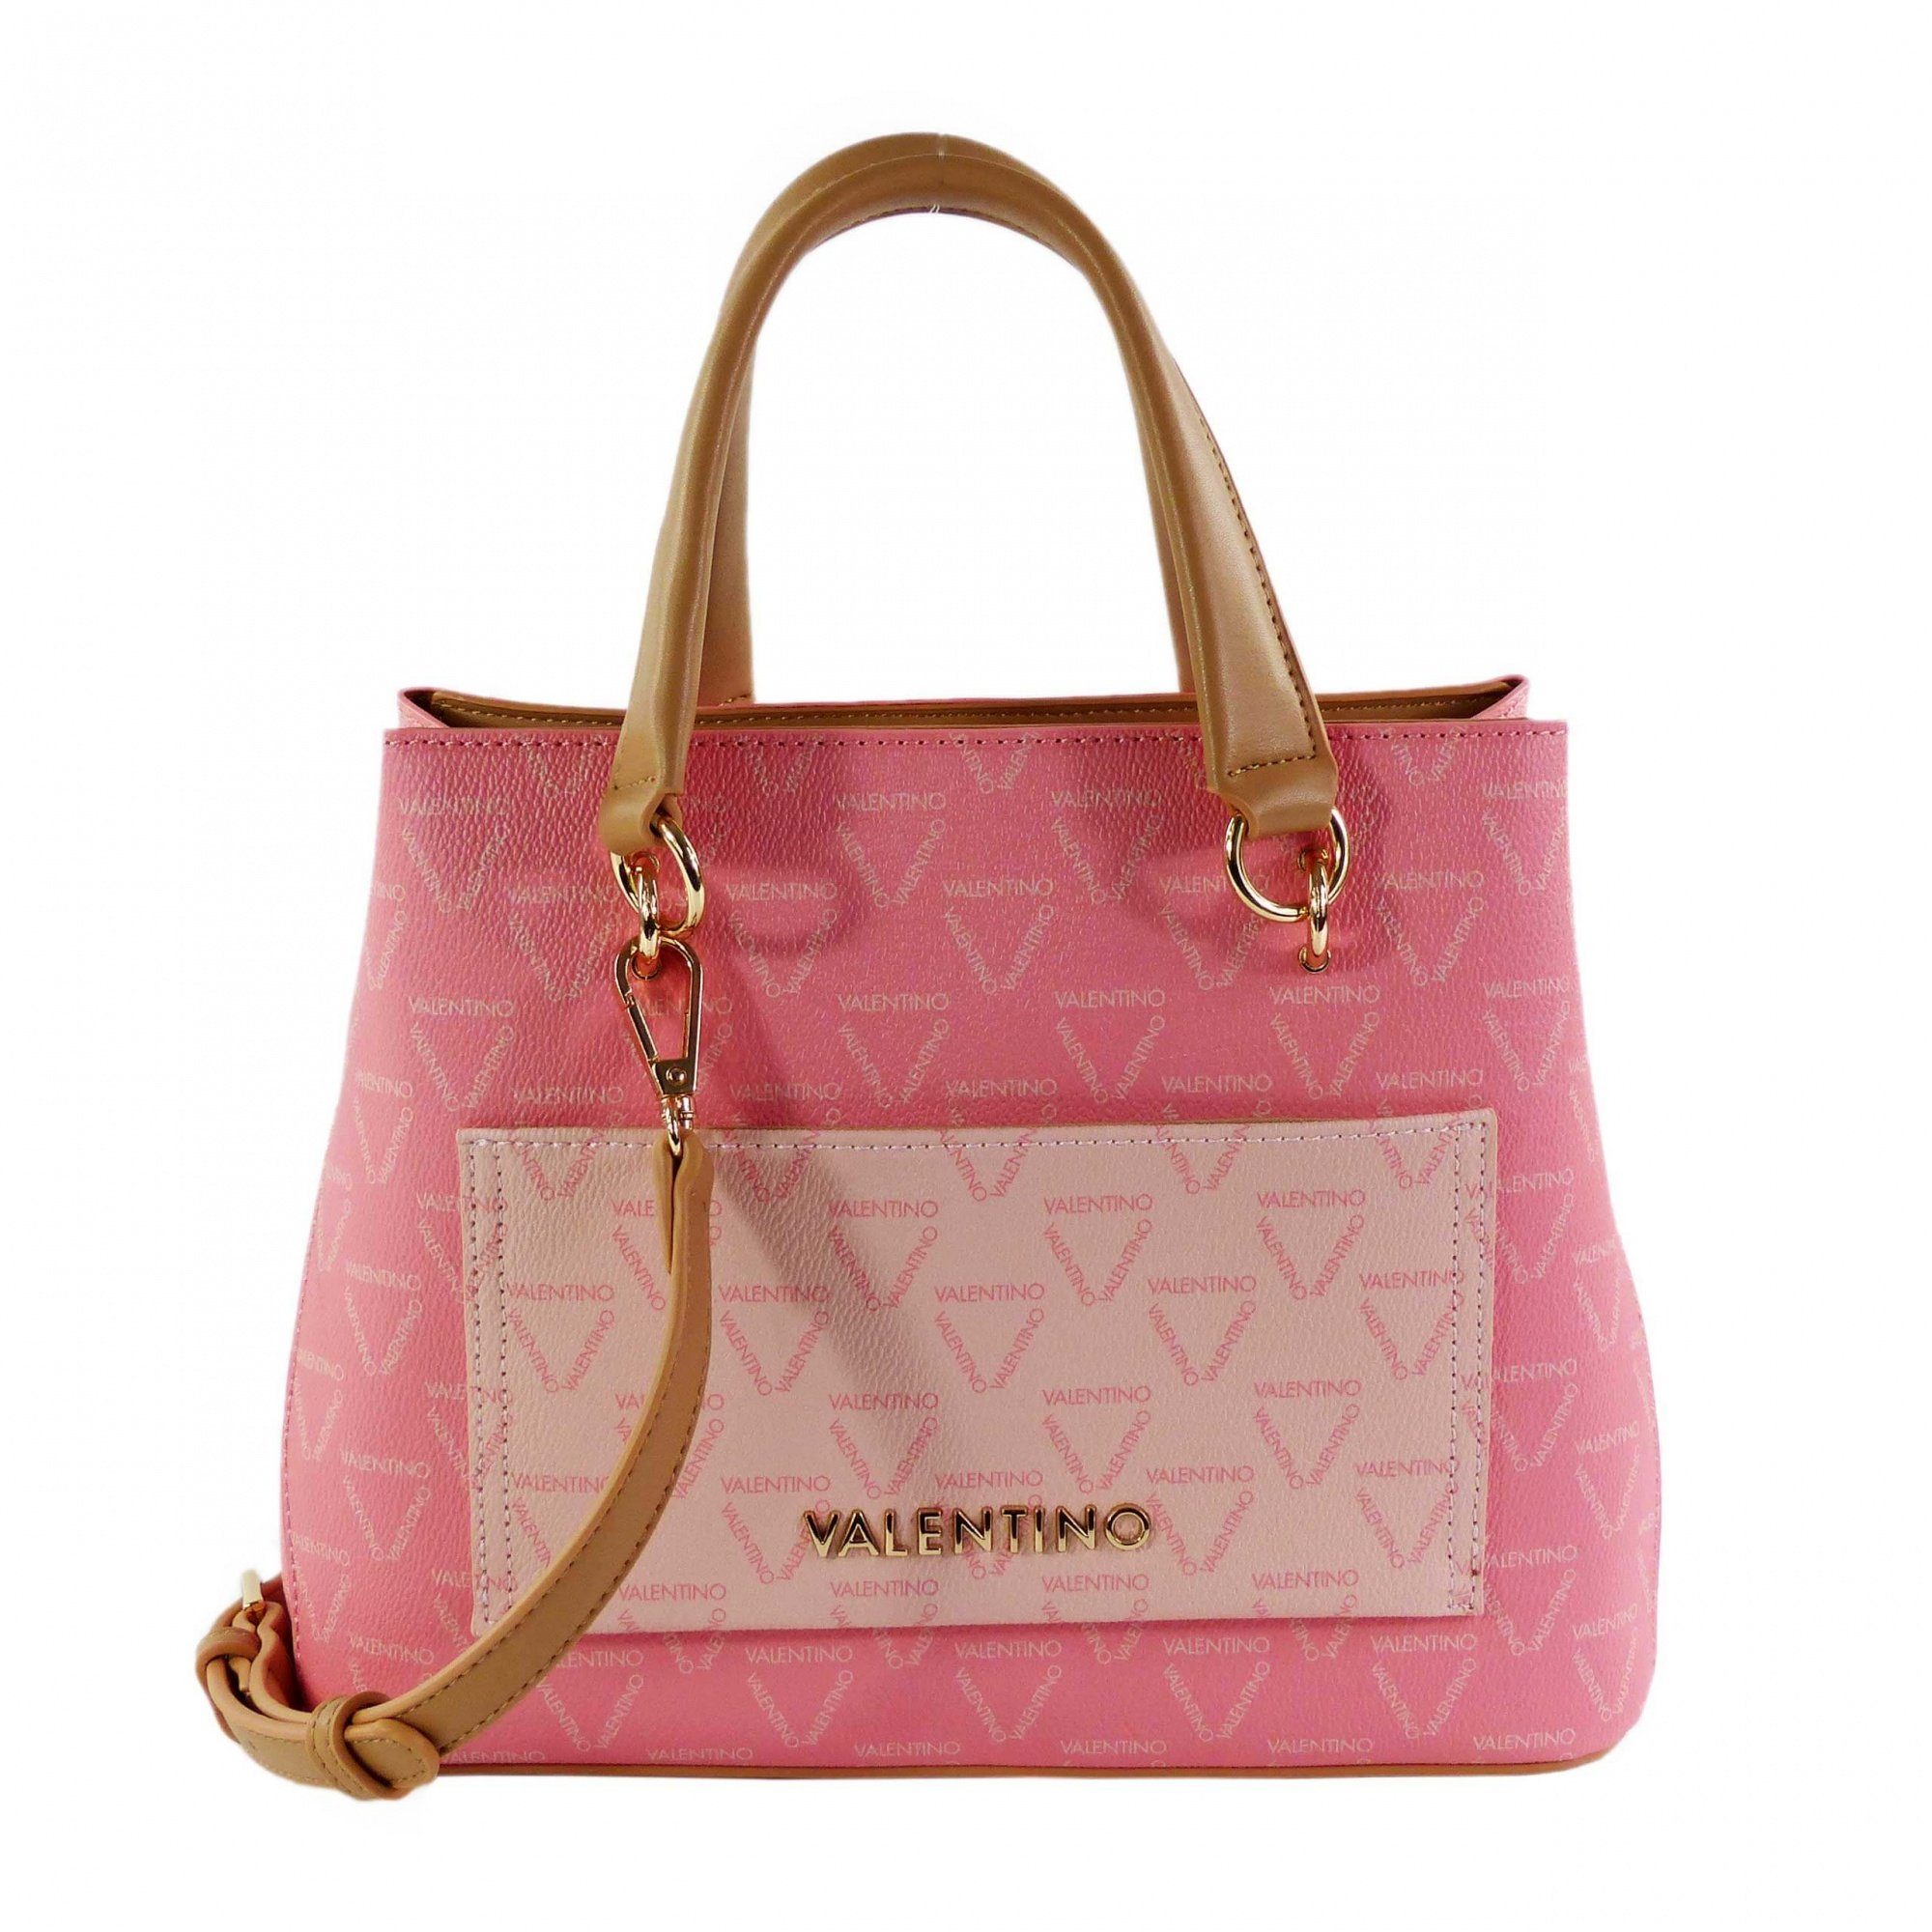 VALENTINO BAGS Handtasche online kaufen | OTTO